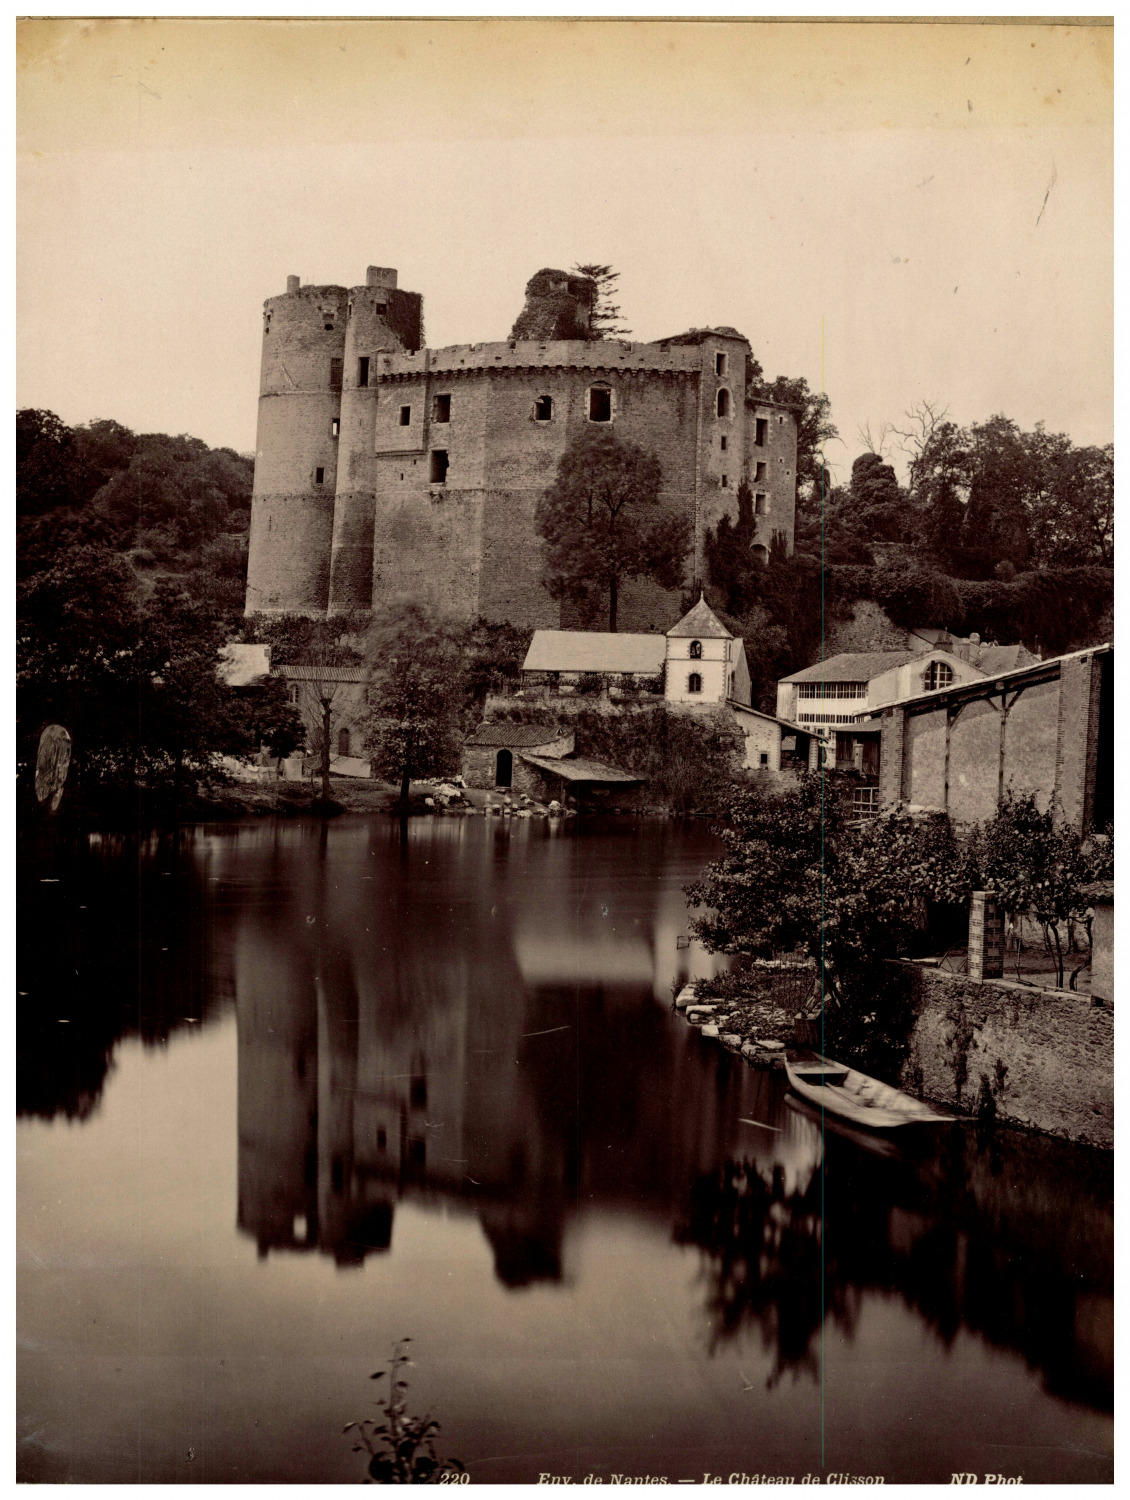 France, approx. de Nantes, Le Château de Clisson, photo. N.D. Vintage print, shot